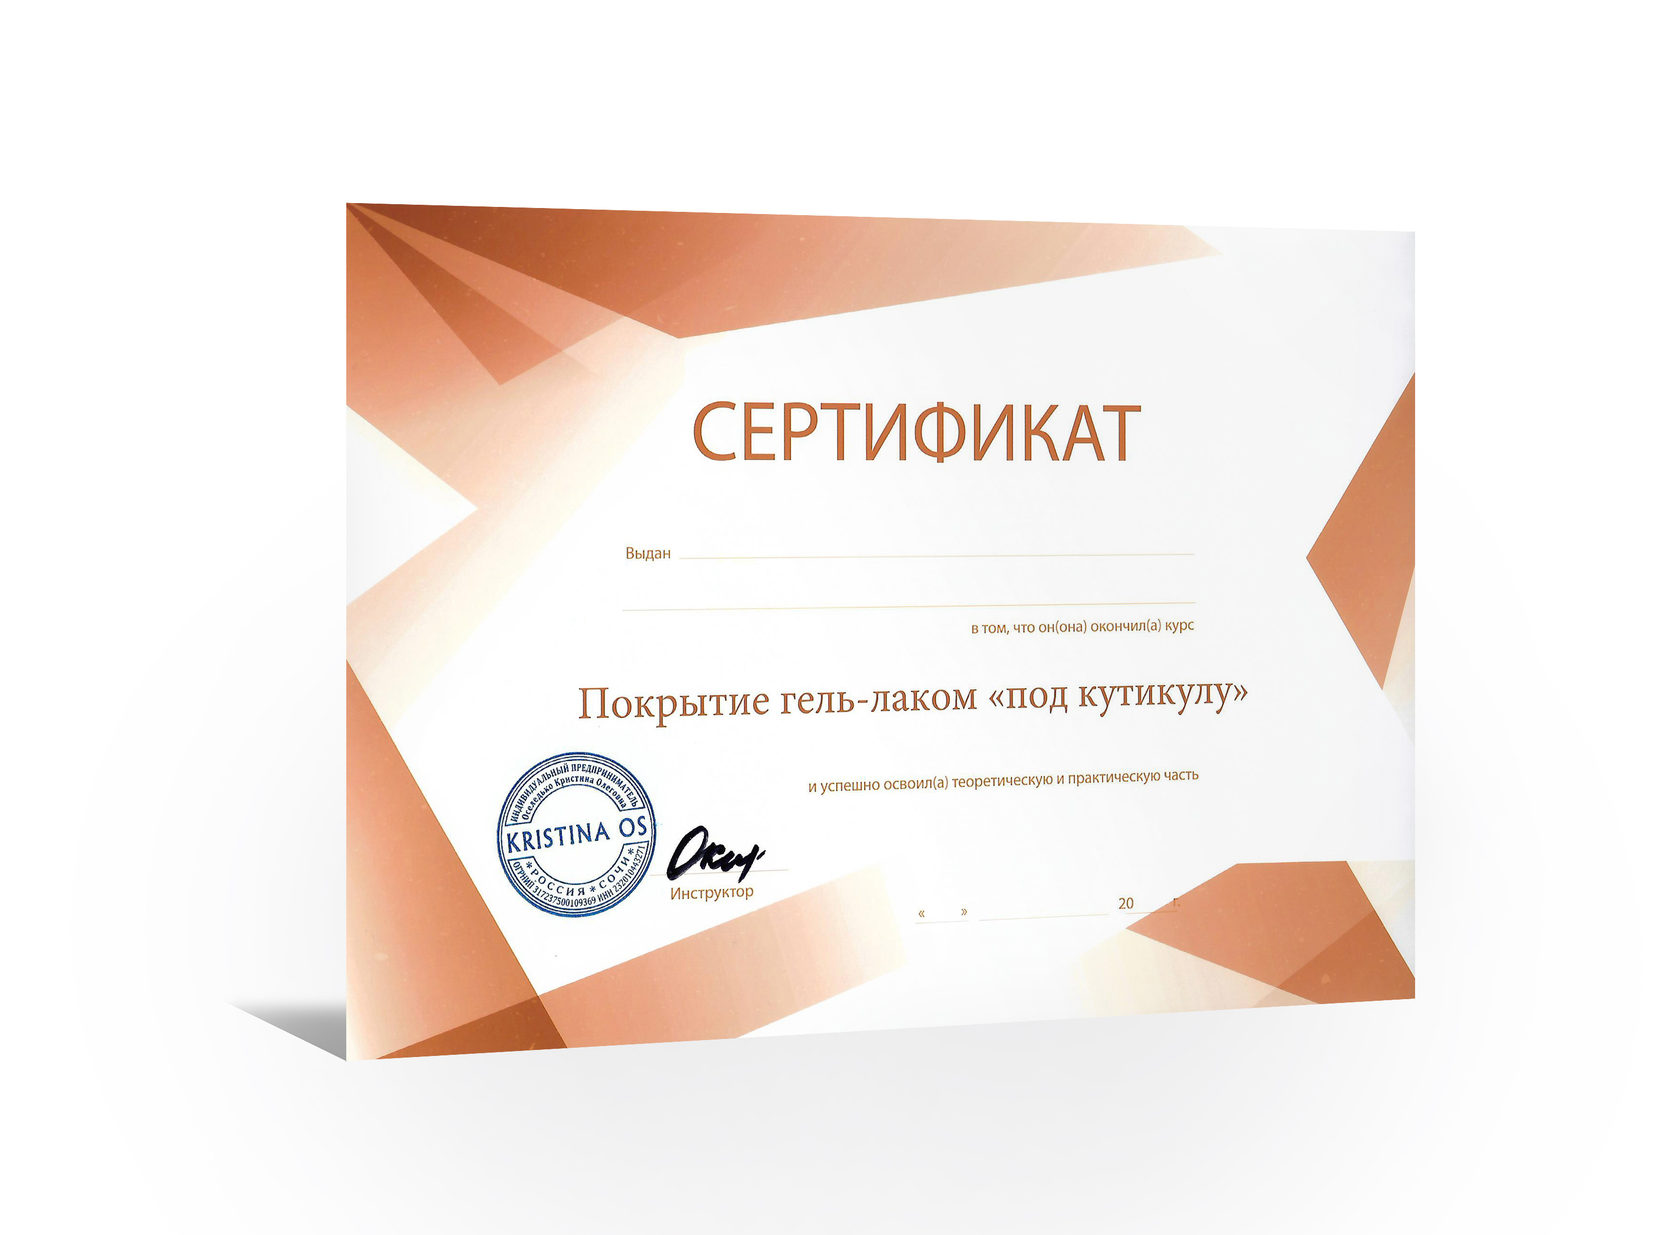 Сертификат на покрытие гель лаком